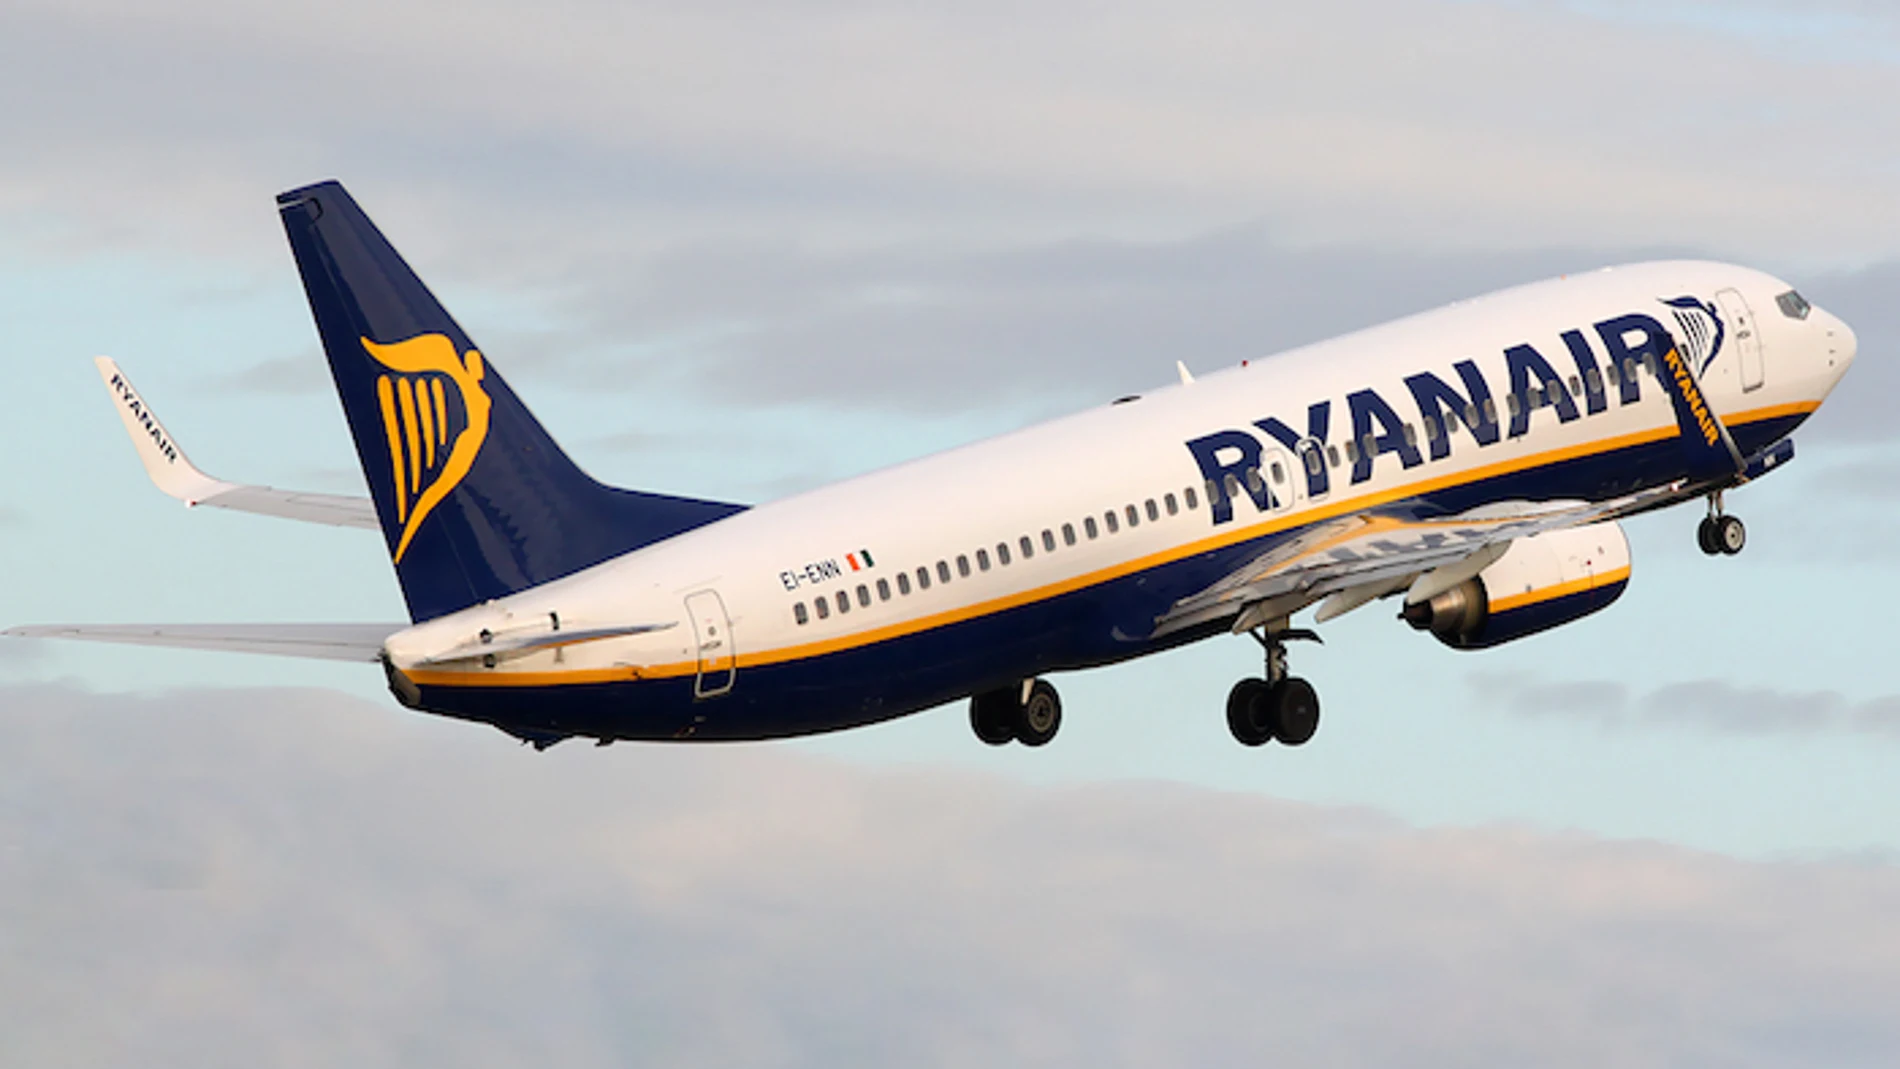 Tripulantes de cabina denuncian a Ryanair por irregularidades y presunto fraude en los contratos laborales